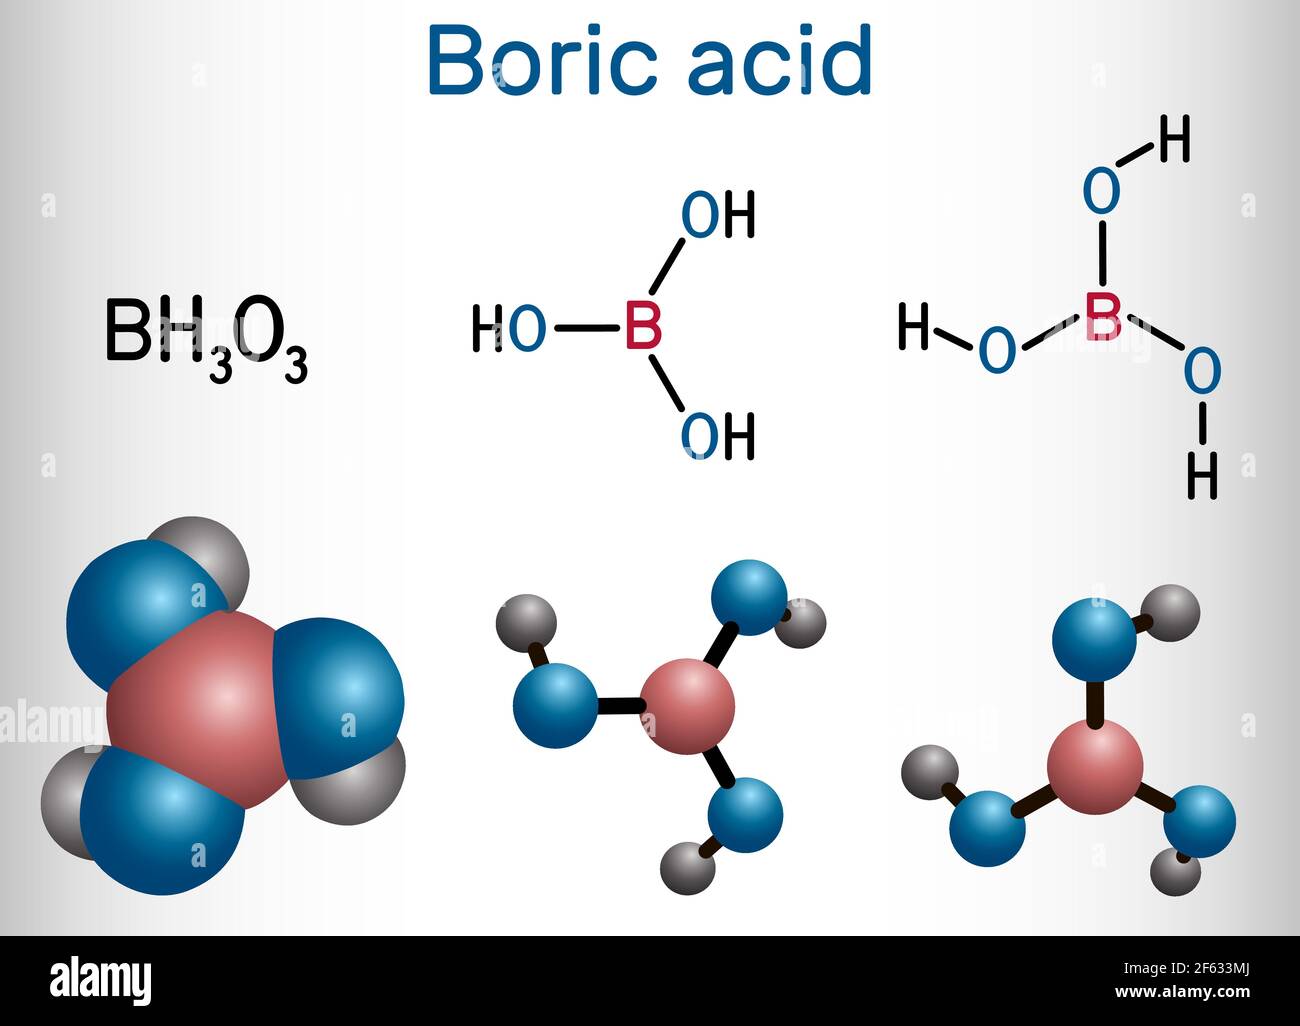 Borsäure, Wasserstoffborat, Borakinsäure, orthoborisches Säuremolekül. Es ist Hydrat von Boroxid mit antiseptischen, antimykotischen, antiviralen Eigenschaften. S Stock Vektor